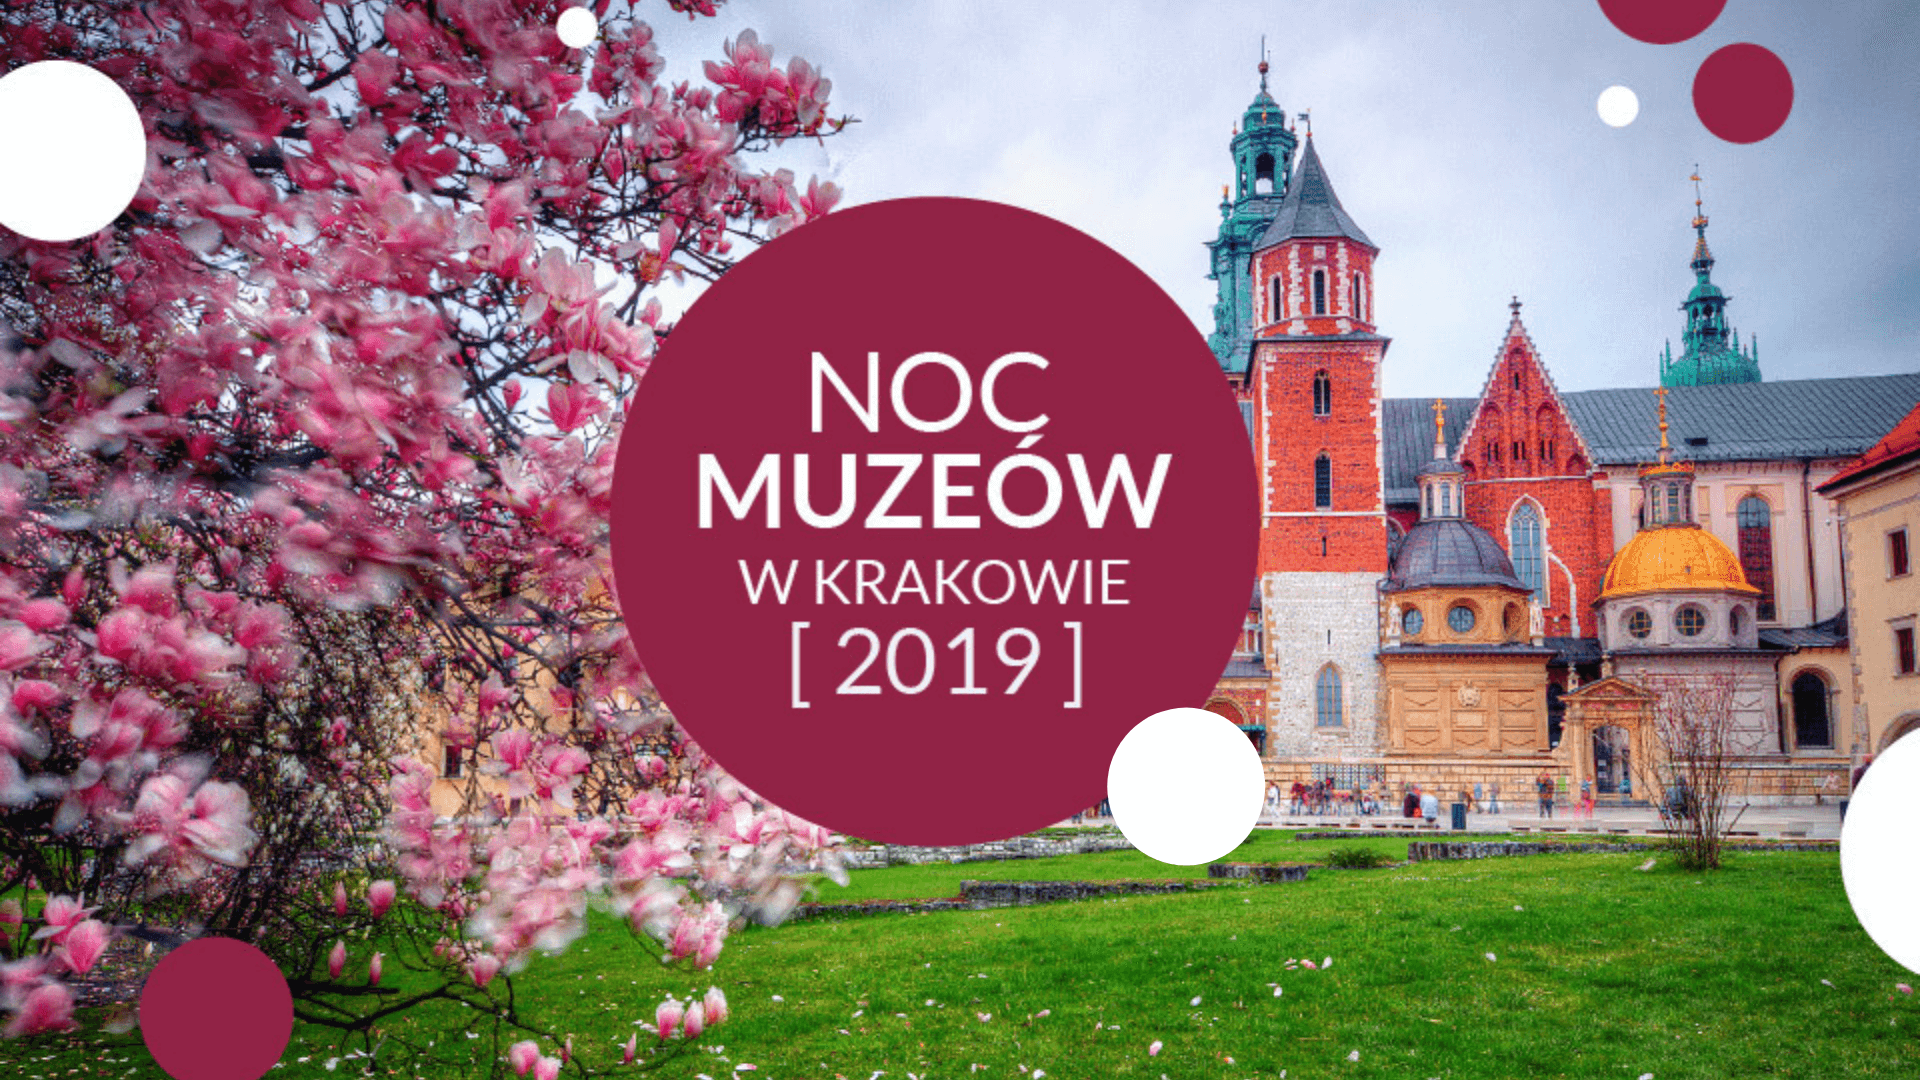 Ніч музеїв 2019 в Кракові